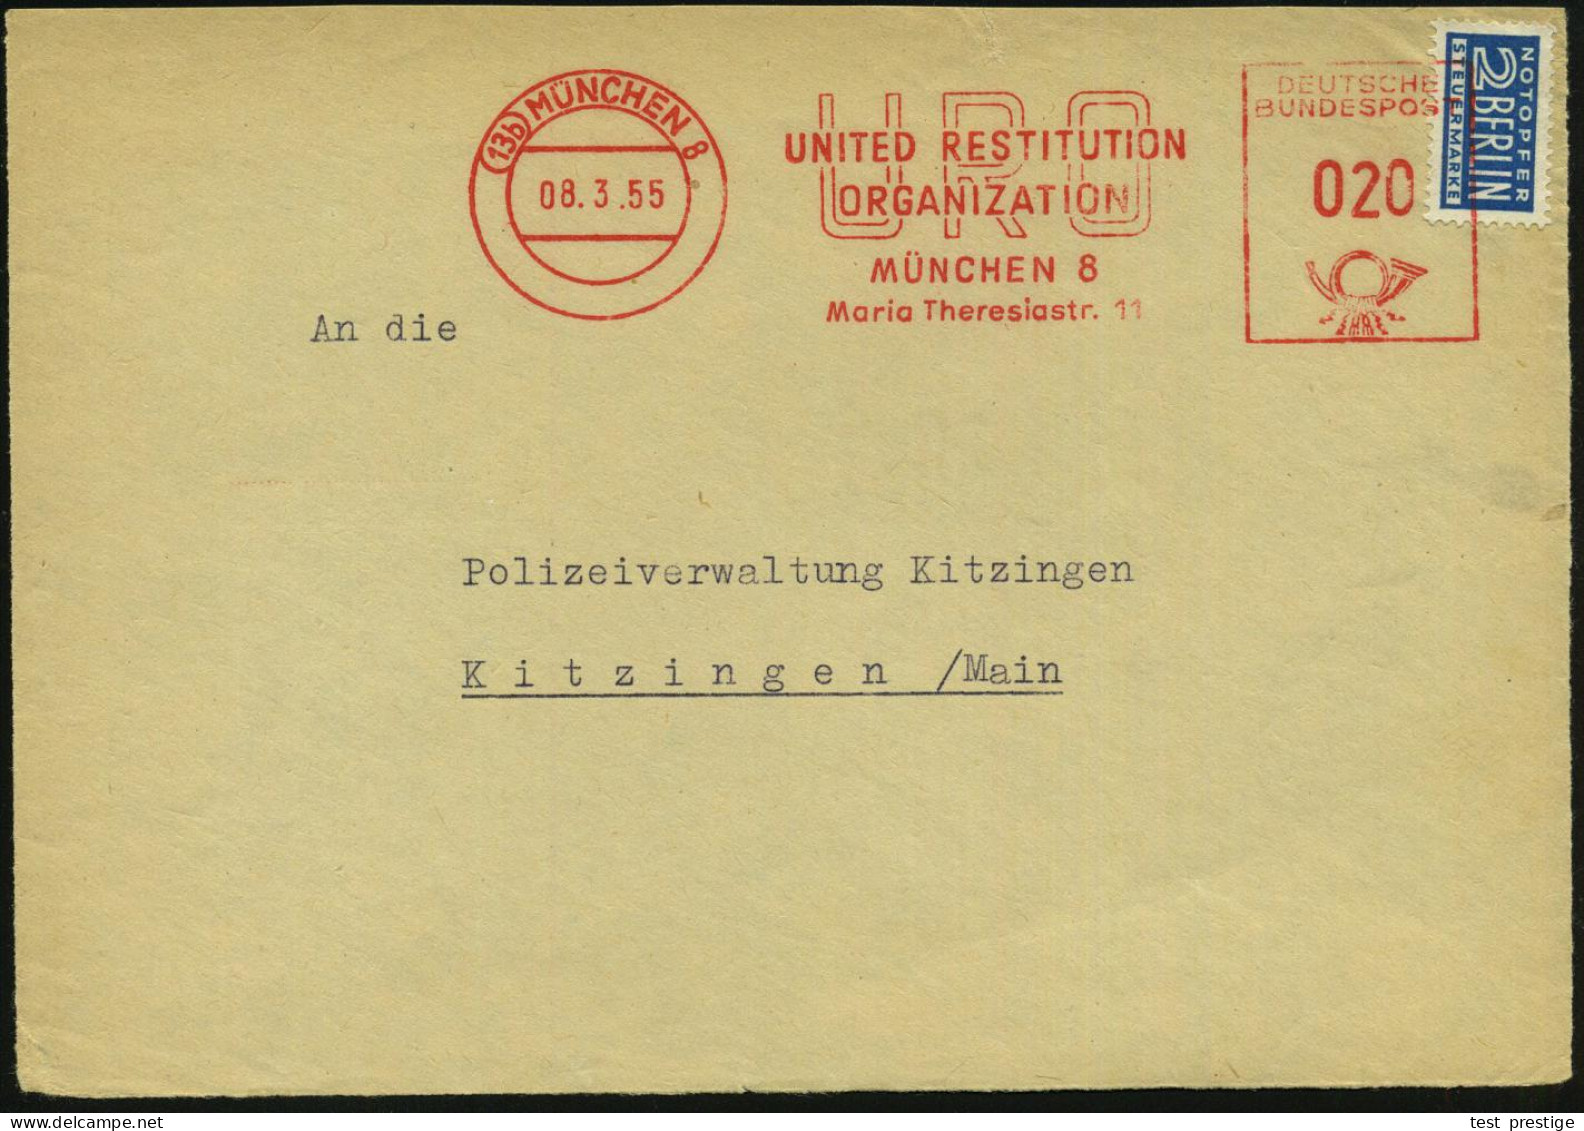 (13b) MÜNCHEN 8/ URO/ UNITED RESTITUTION/ ORGANIZATION.. 1955 (8.3.) AFS = Wiedergutmachungs-Behörde Auf 2 Pf. NoB (VE)  - Jewish